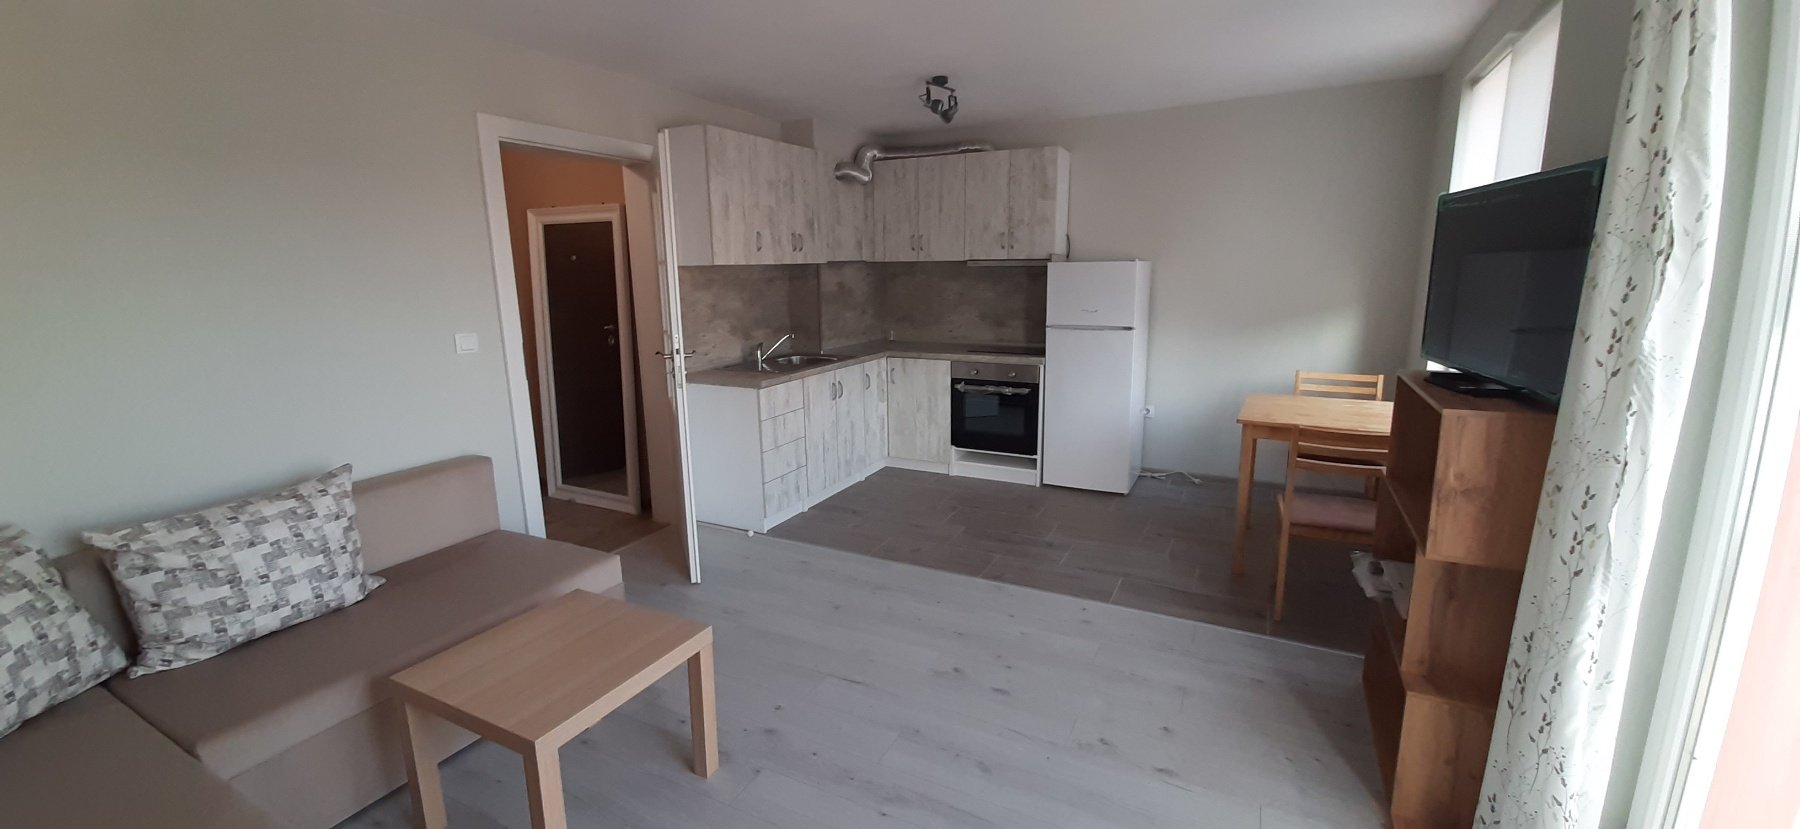 Тристаен апартамент  в  Пловдив за 700  лв - Дава под наем 3-стаен